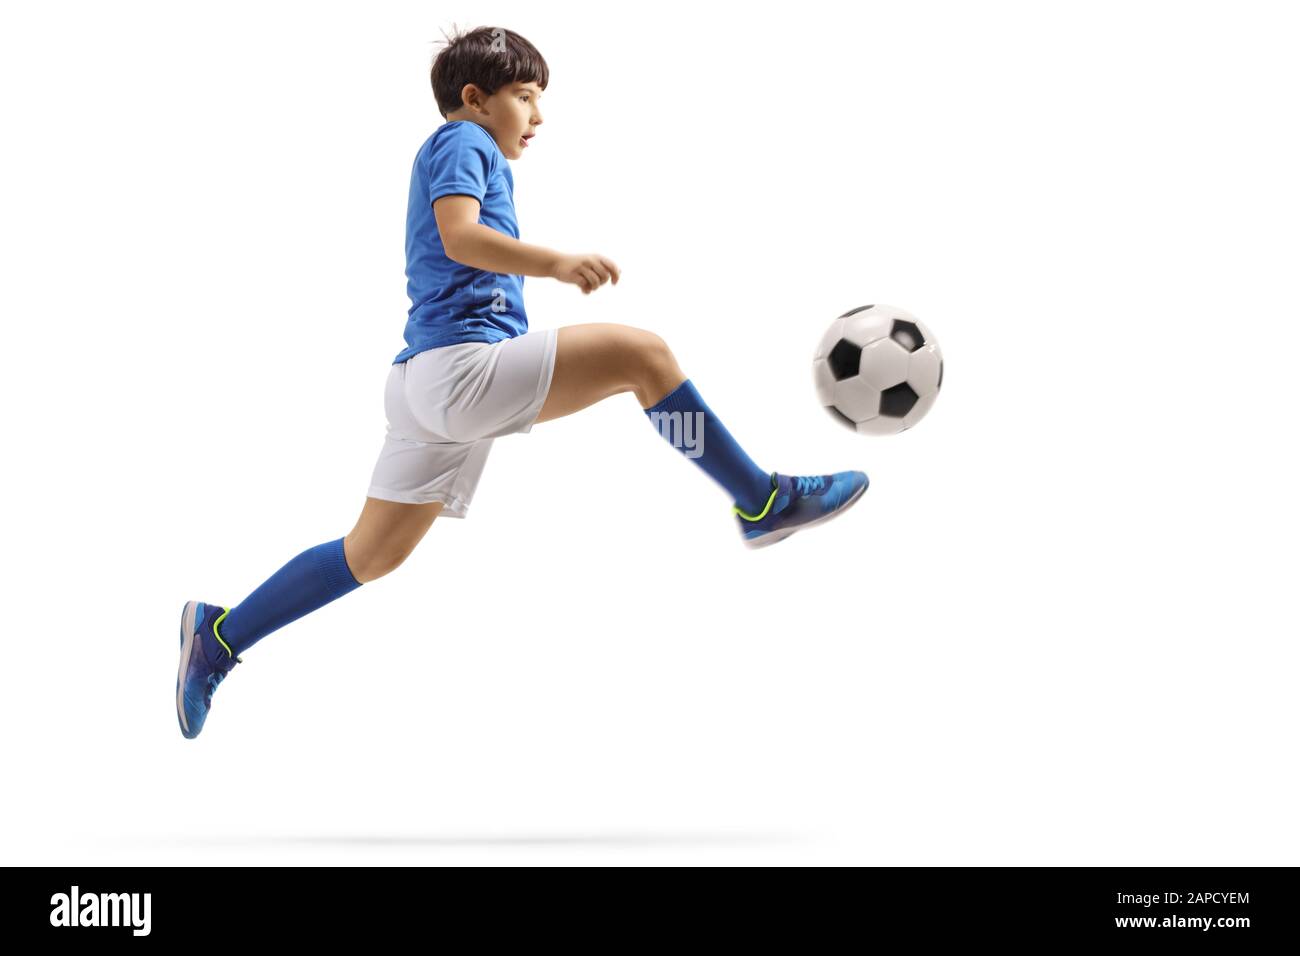 Profilo a tutta lunghezza di un ragazzo che salta e calcia una palla da calcio isolato su sfondo bianco Foto Stock